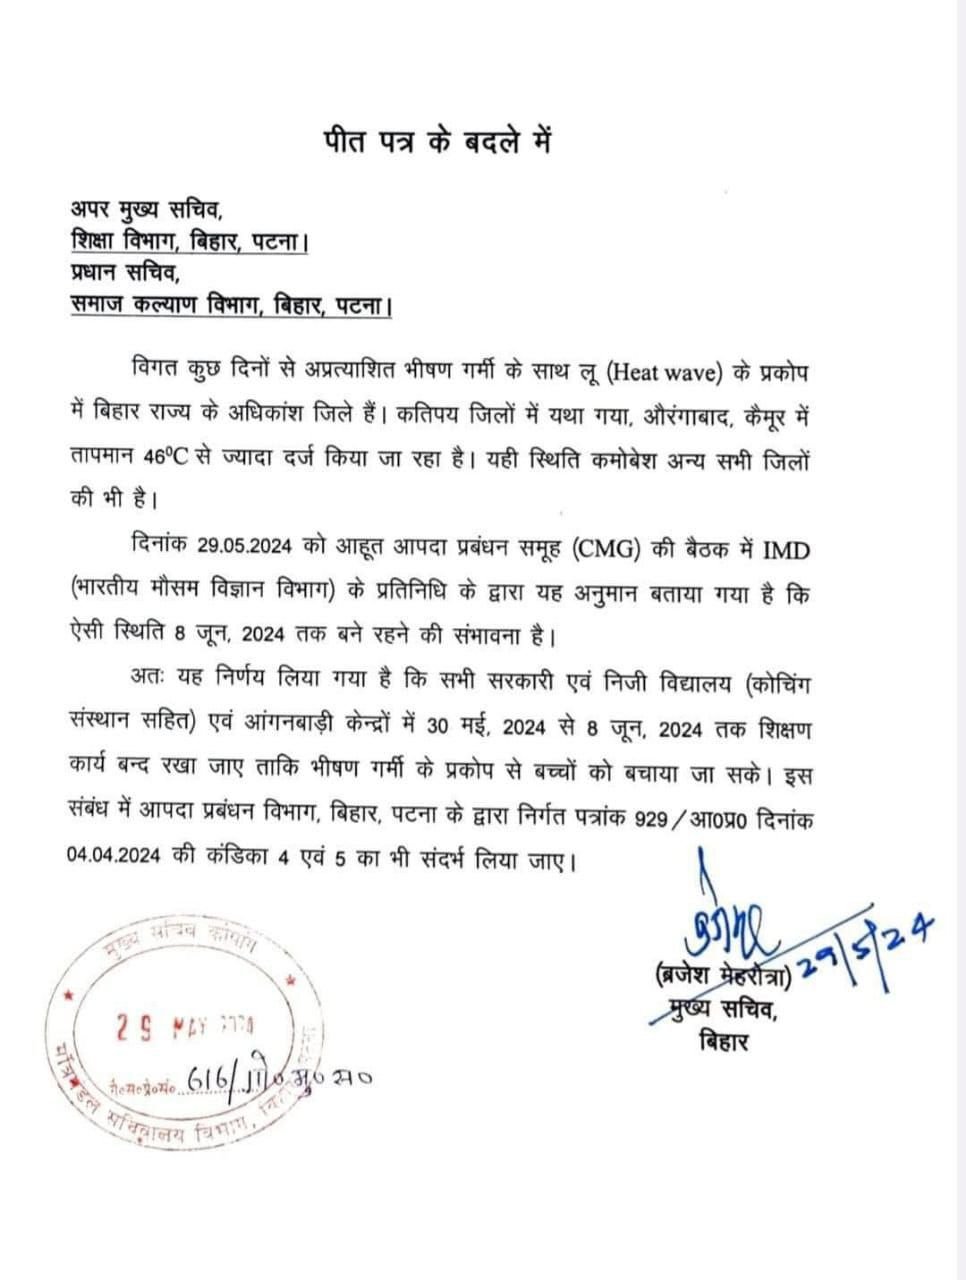 बिहार में भीषण गर्मी तथा भयंकर लूं को देखता हुआ बिहार के मुख्यमंत्री श्री नीतीश कुमार जी ने जारी किया नोटिस